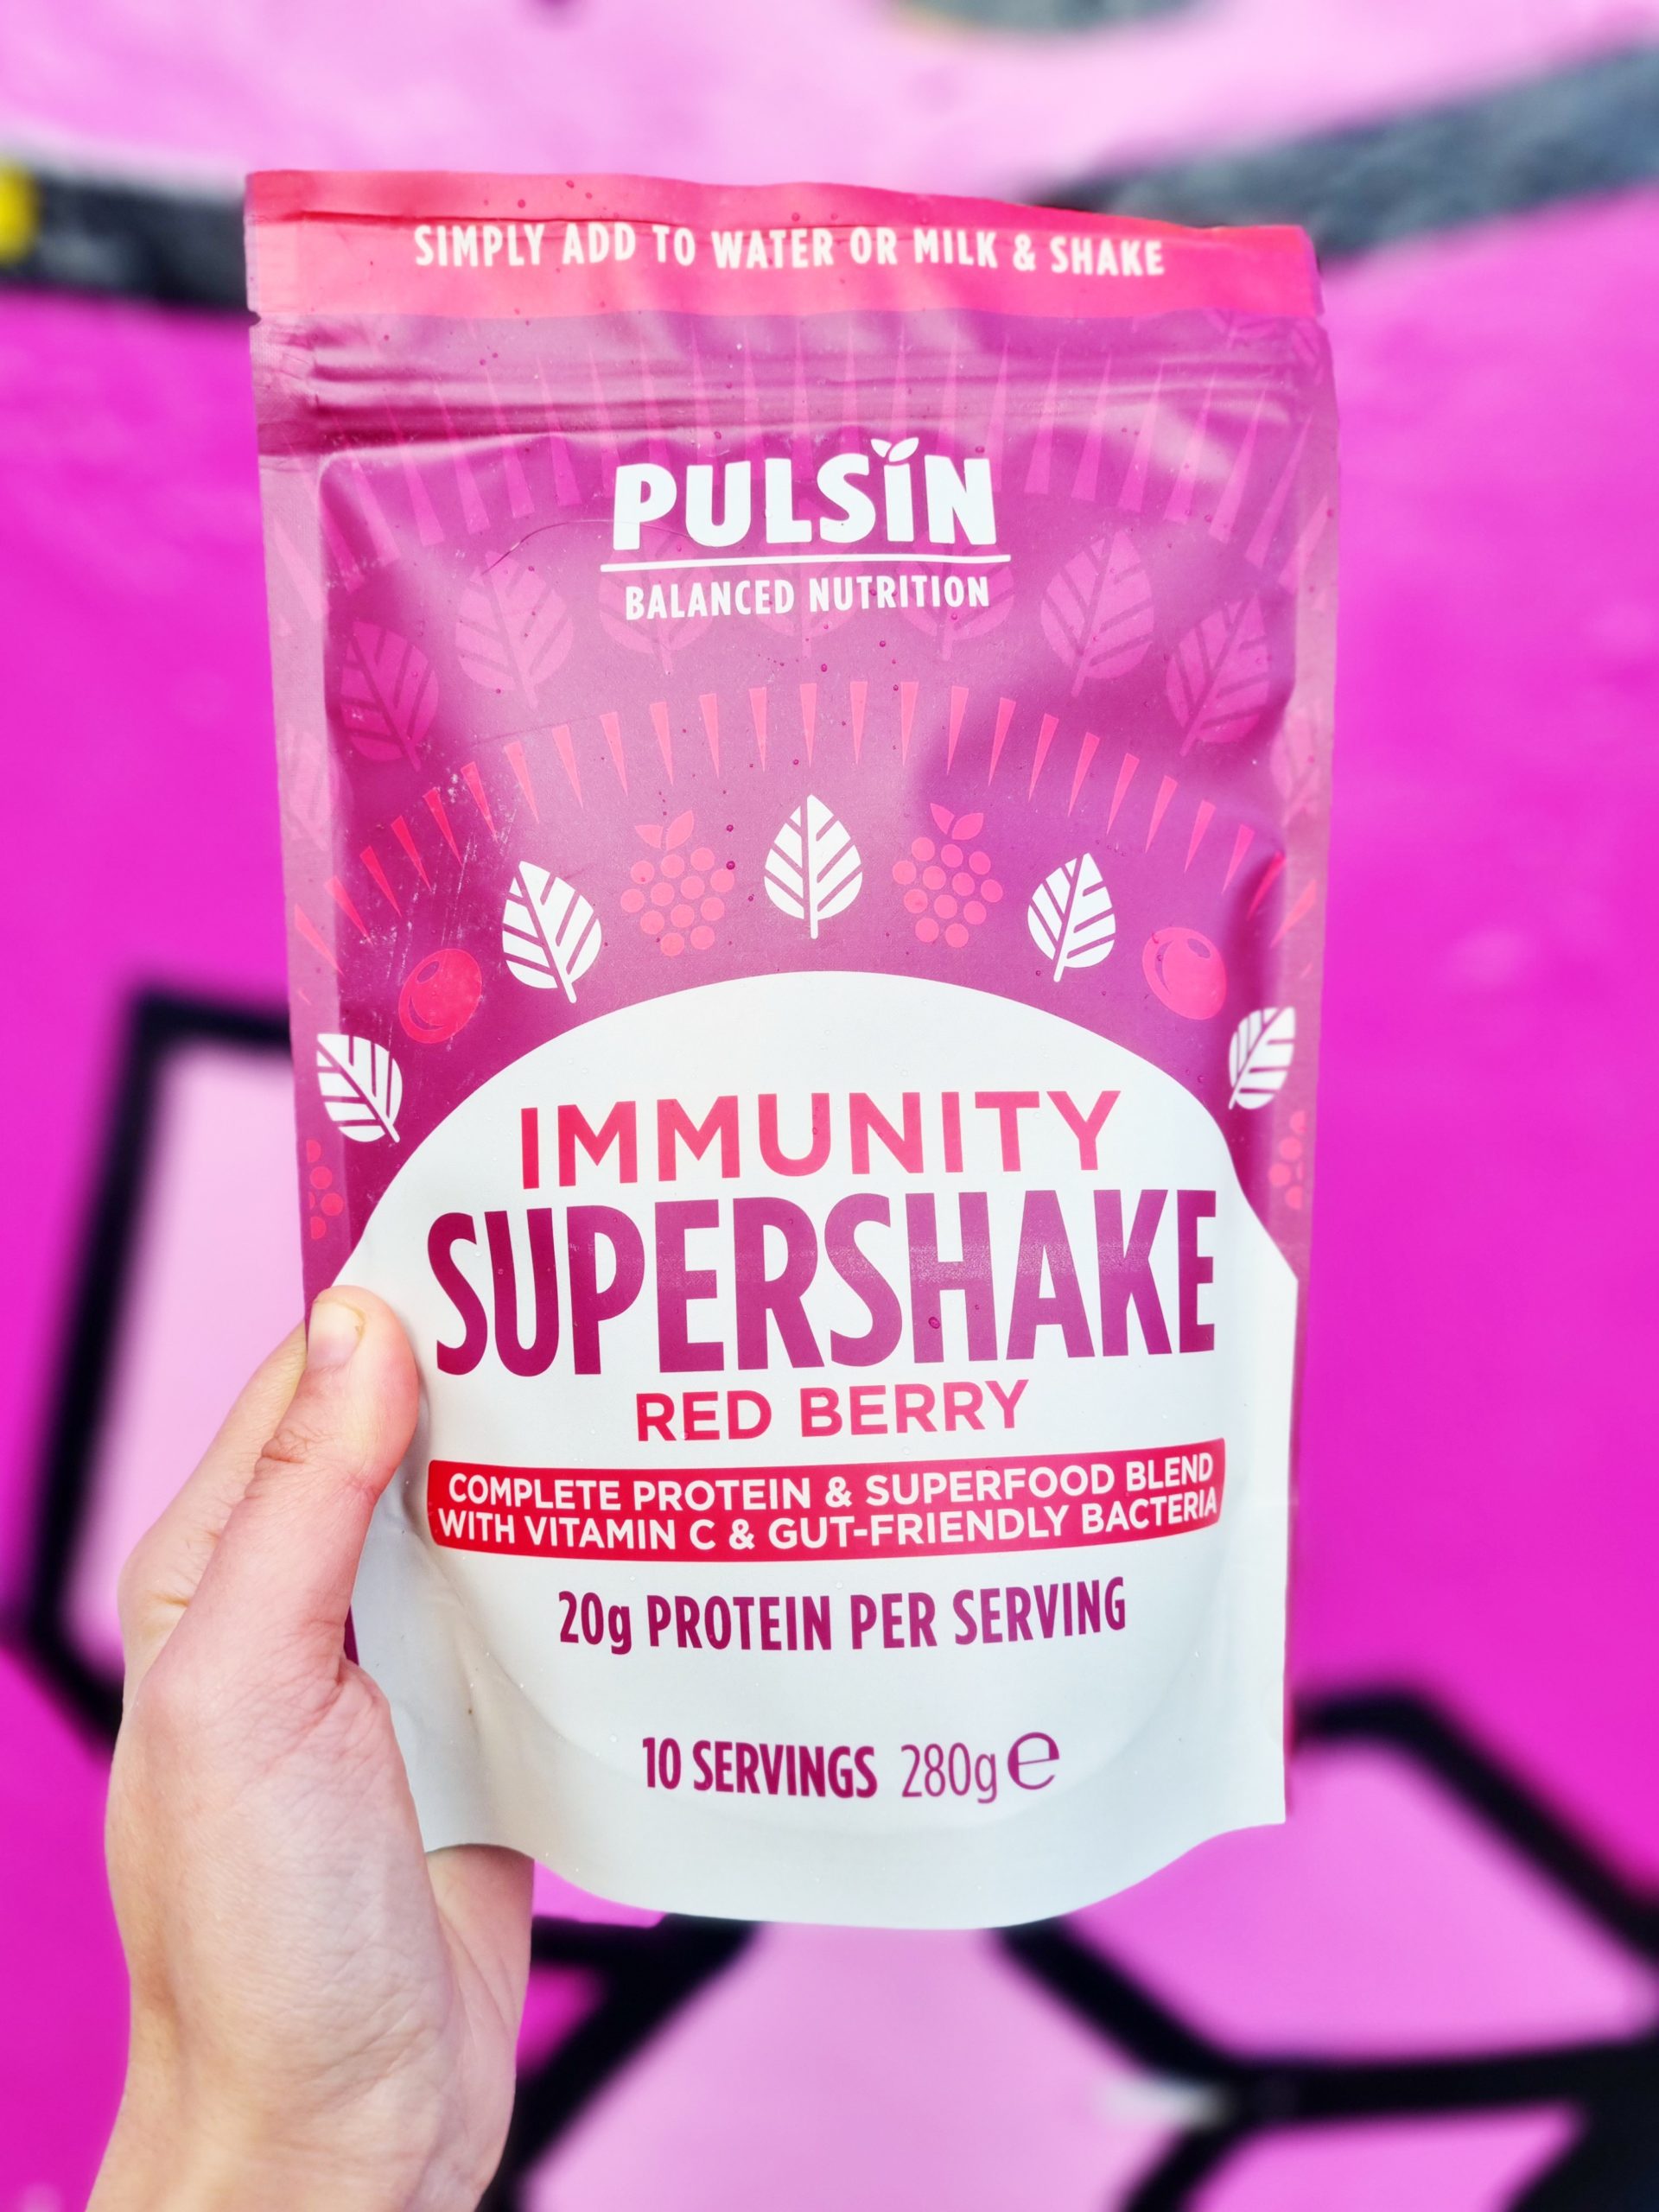 <img src="pulsin.jpg" alt="pulsin immunity supershake mindful veganuary"/> 